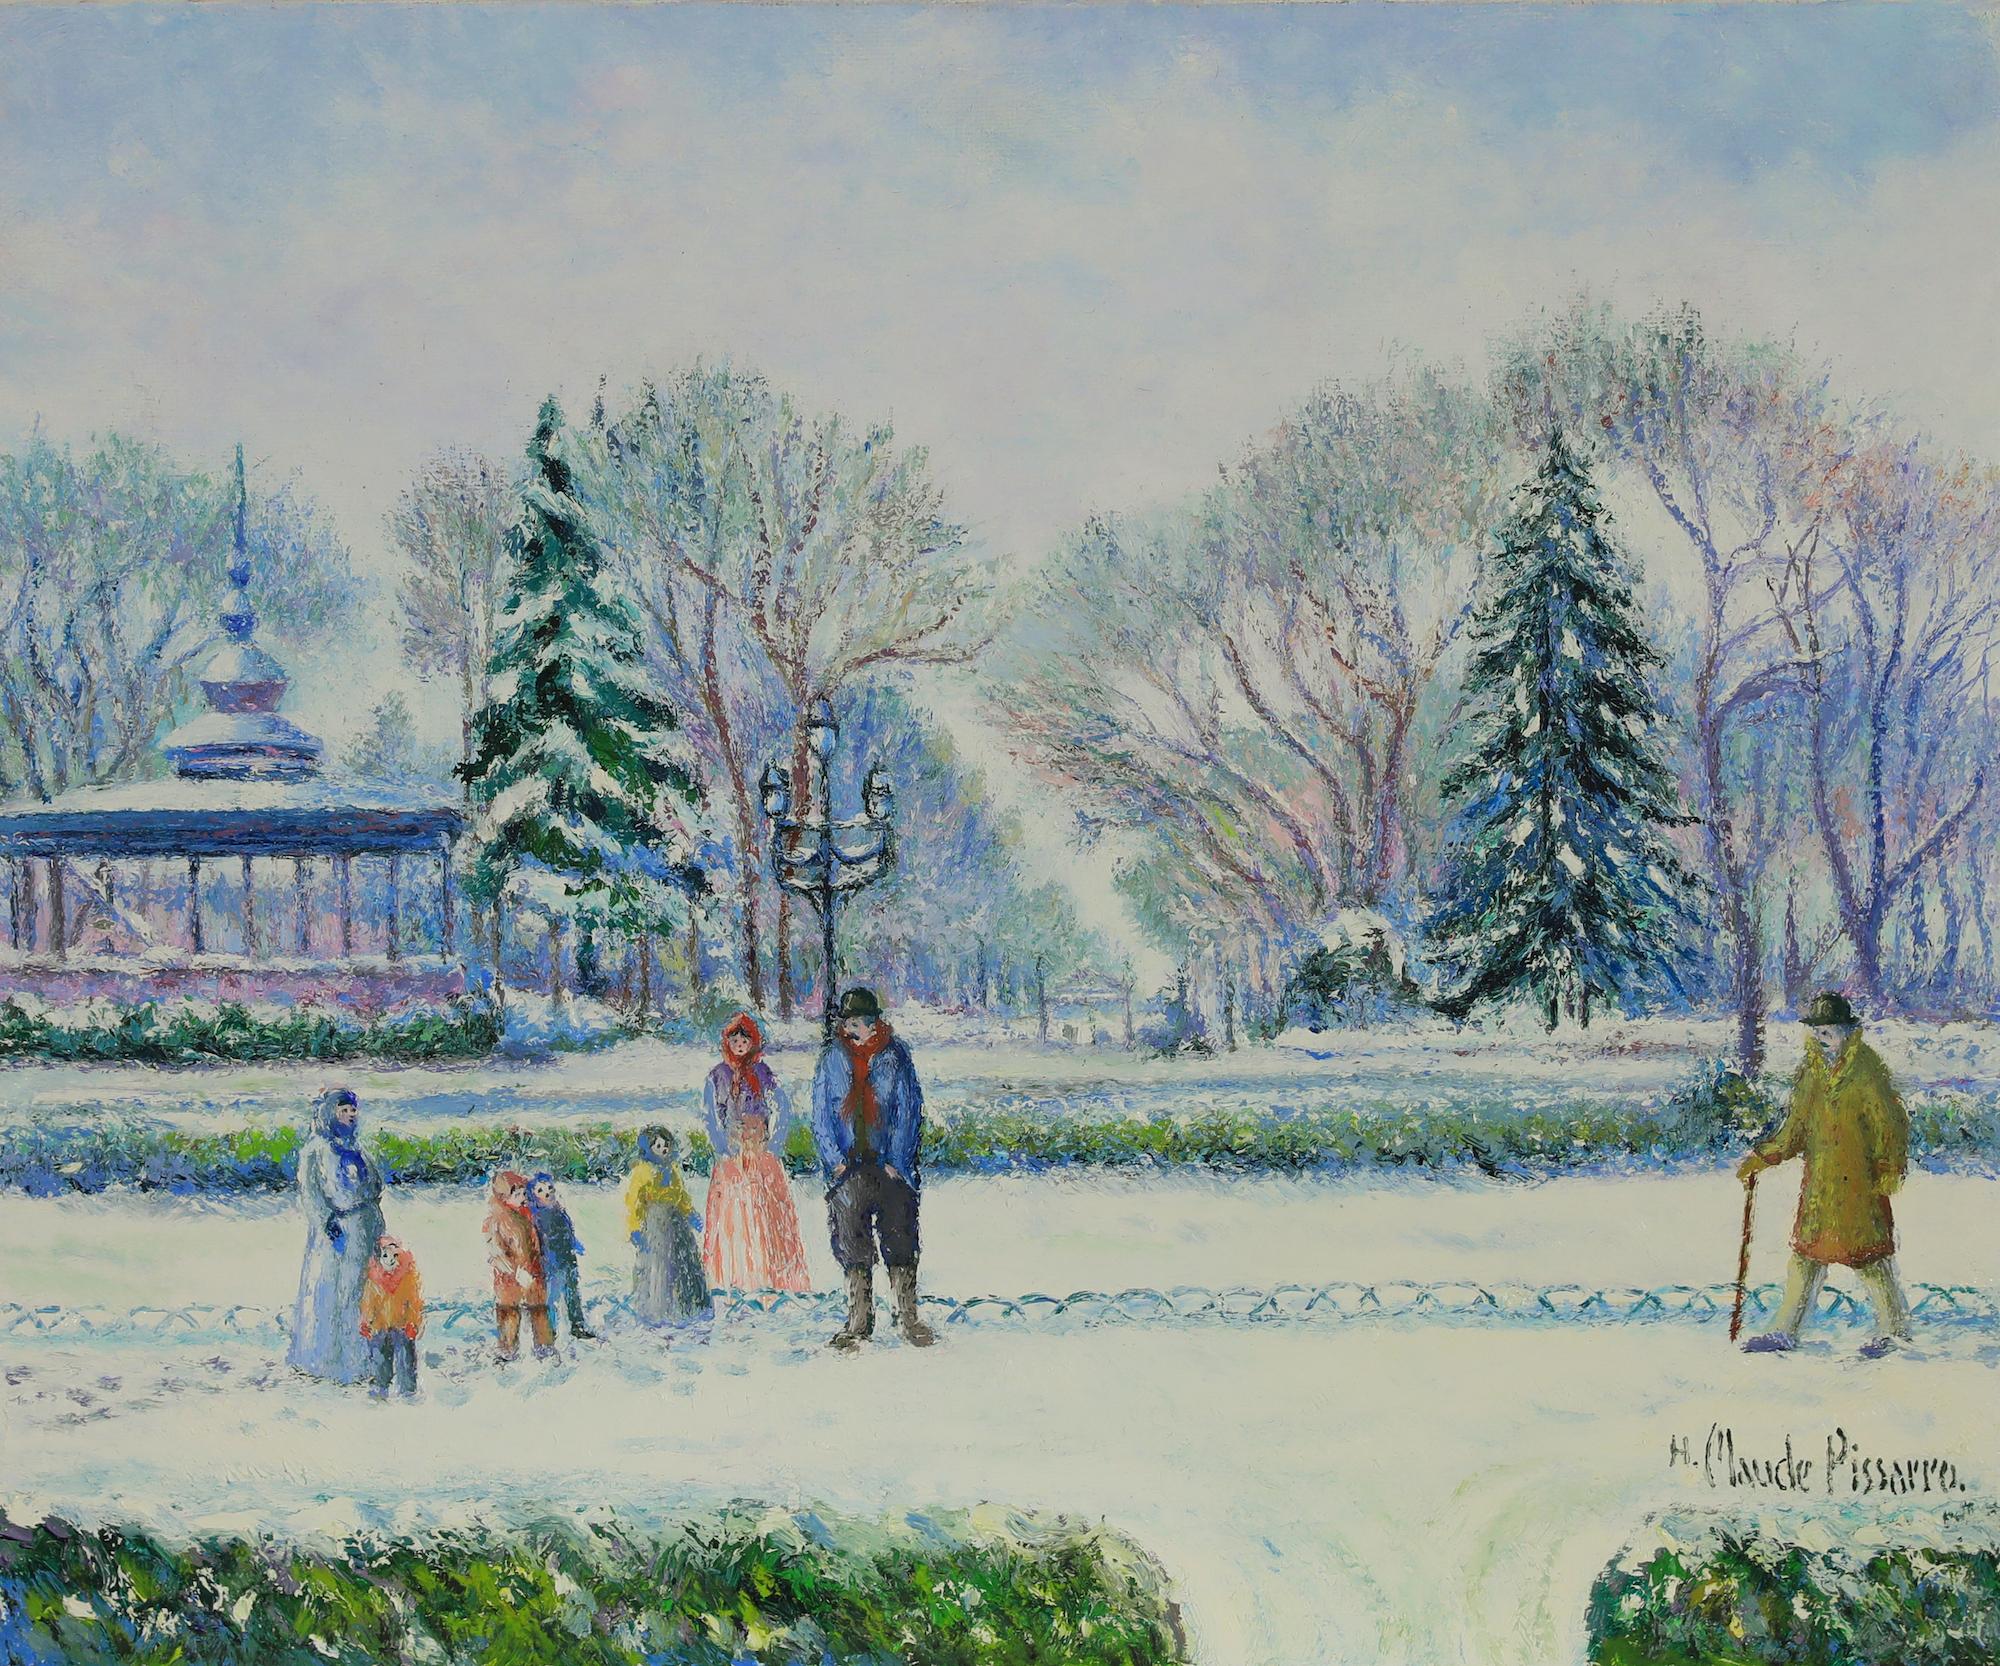 Hughes Claude Pissarro Landscape Painting - Snowscape painting titled Le Kiosque Joudon à Toulouse by H. Claude Pissarro